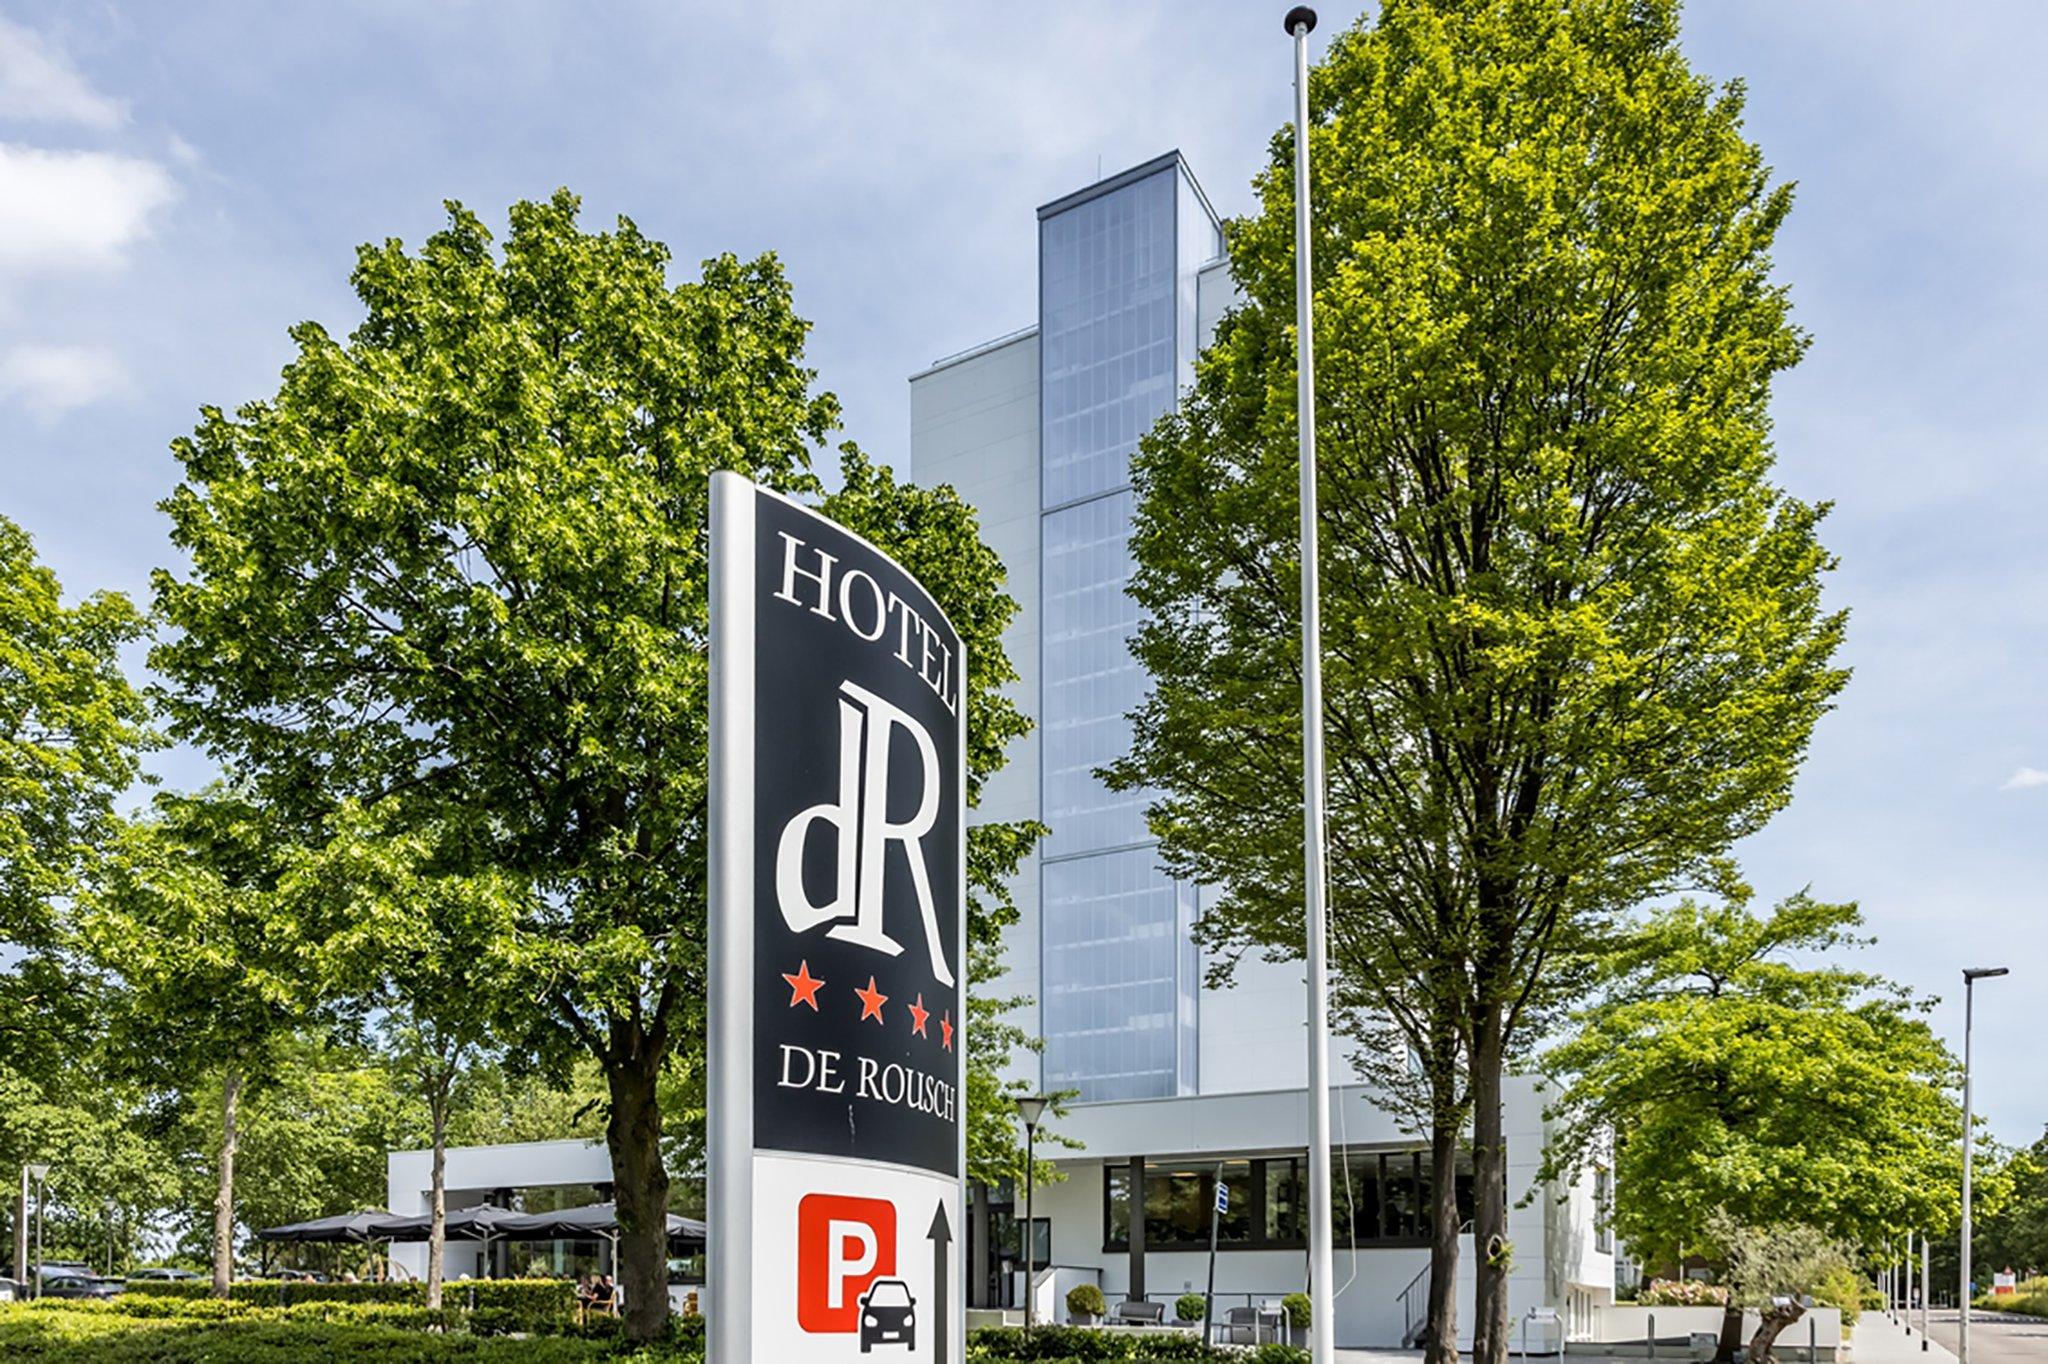 Hotel de Rousch in Heerlen, NL